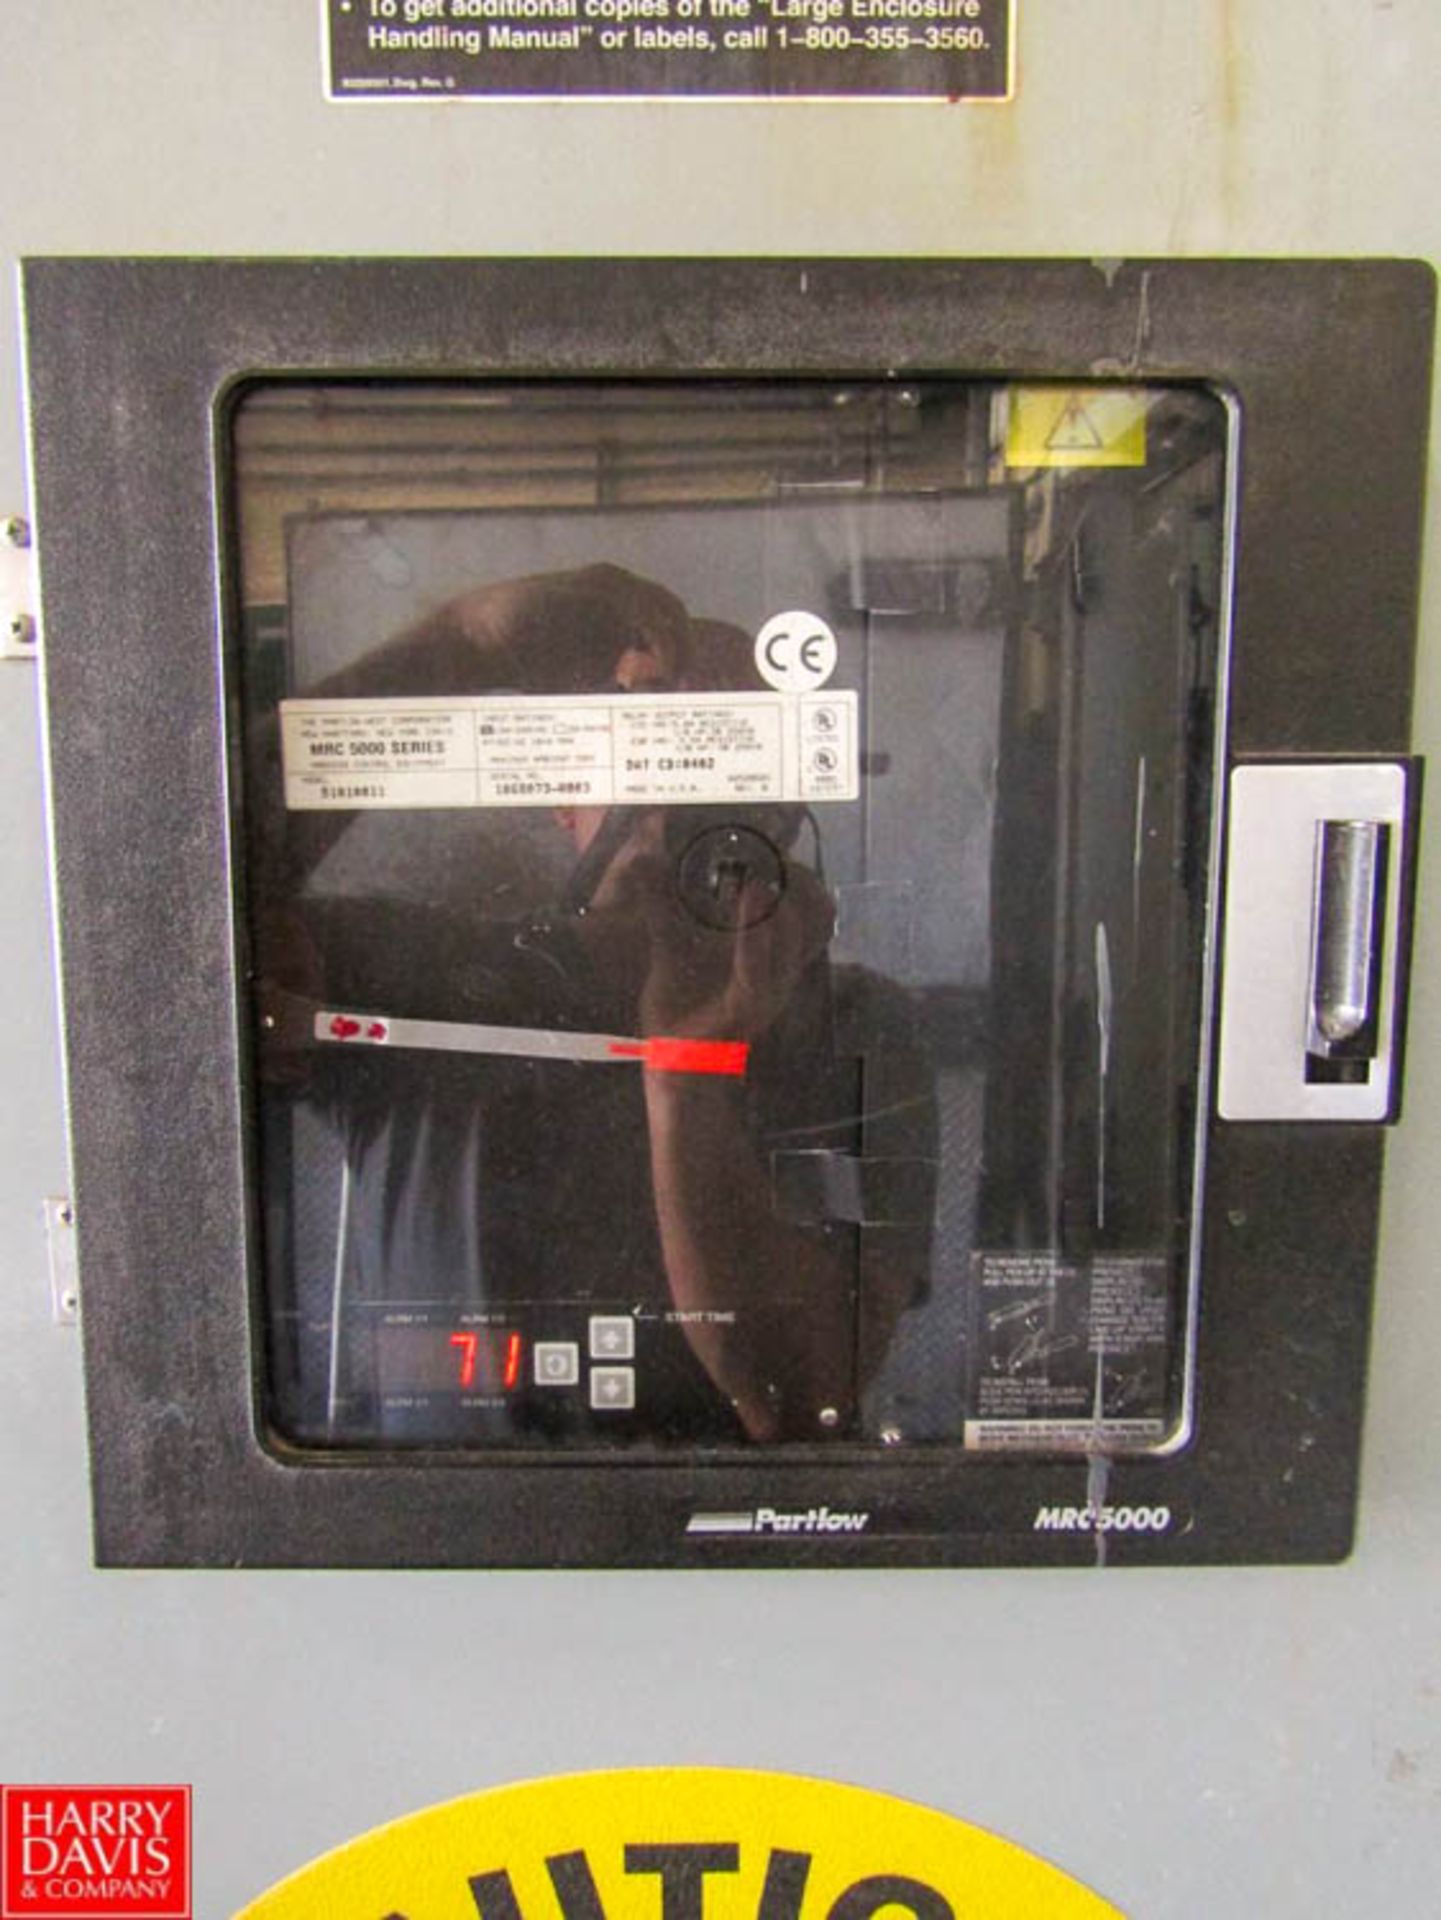 Steel 2-Door Electrical Cabinet with Allen Bradley PanelView 1000 Partlow MRC5000 Chart Recorder - Image 3 of 4